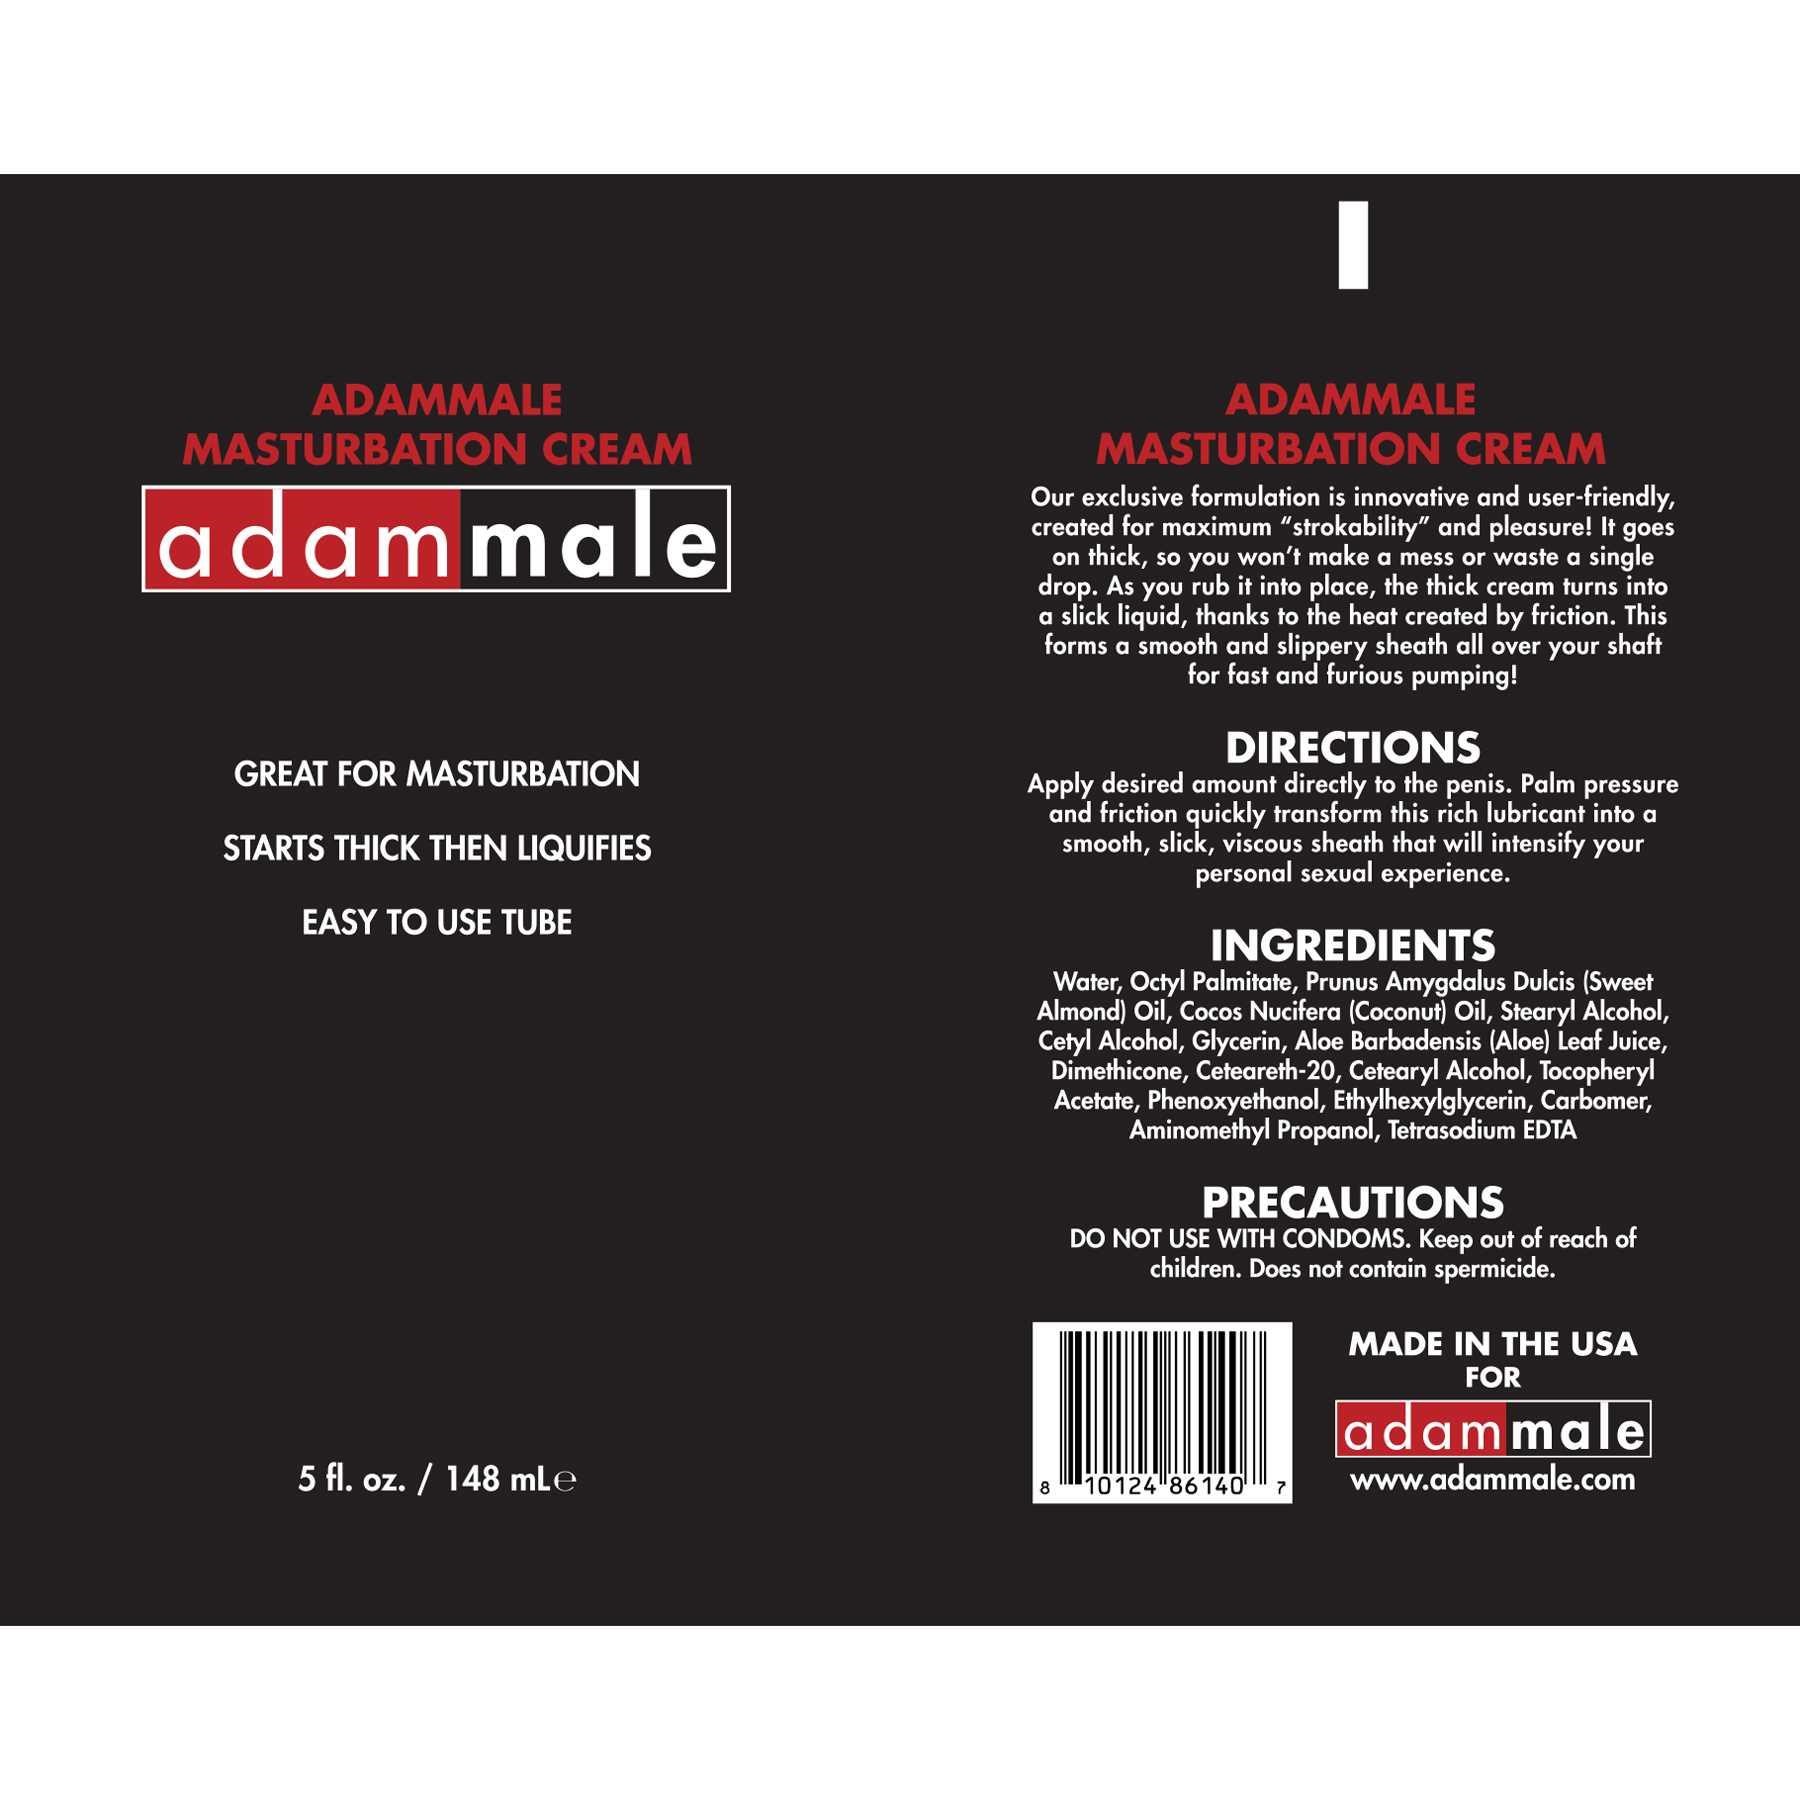 I295 AdamMale Mastrubation Cream label